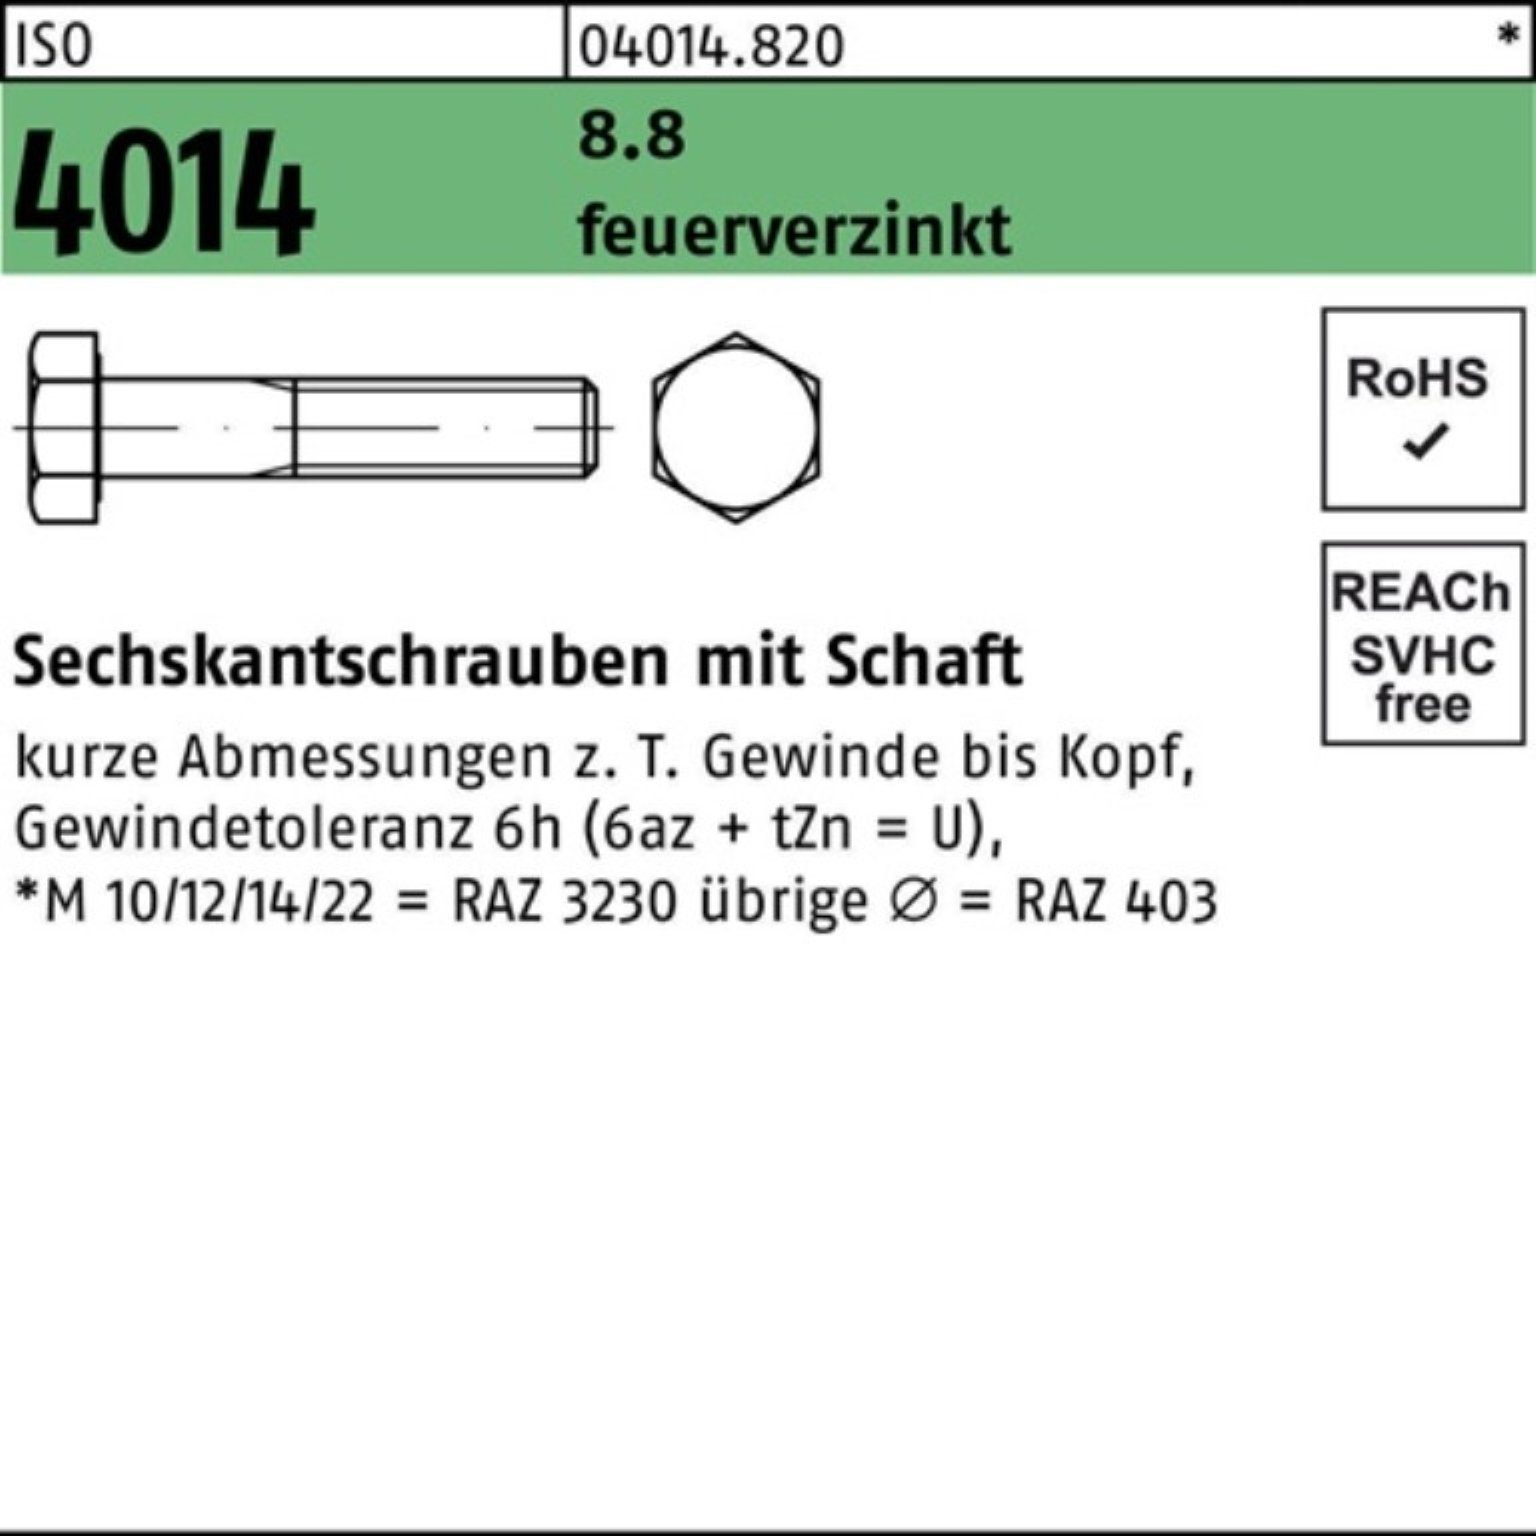 Bufab Sechskantschraube 100er Pack Sechskantschraube ISO 4014 Schaft M33x 200 8.8 feuerverz. 1